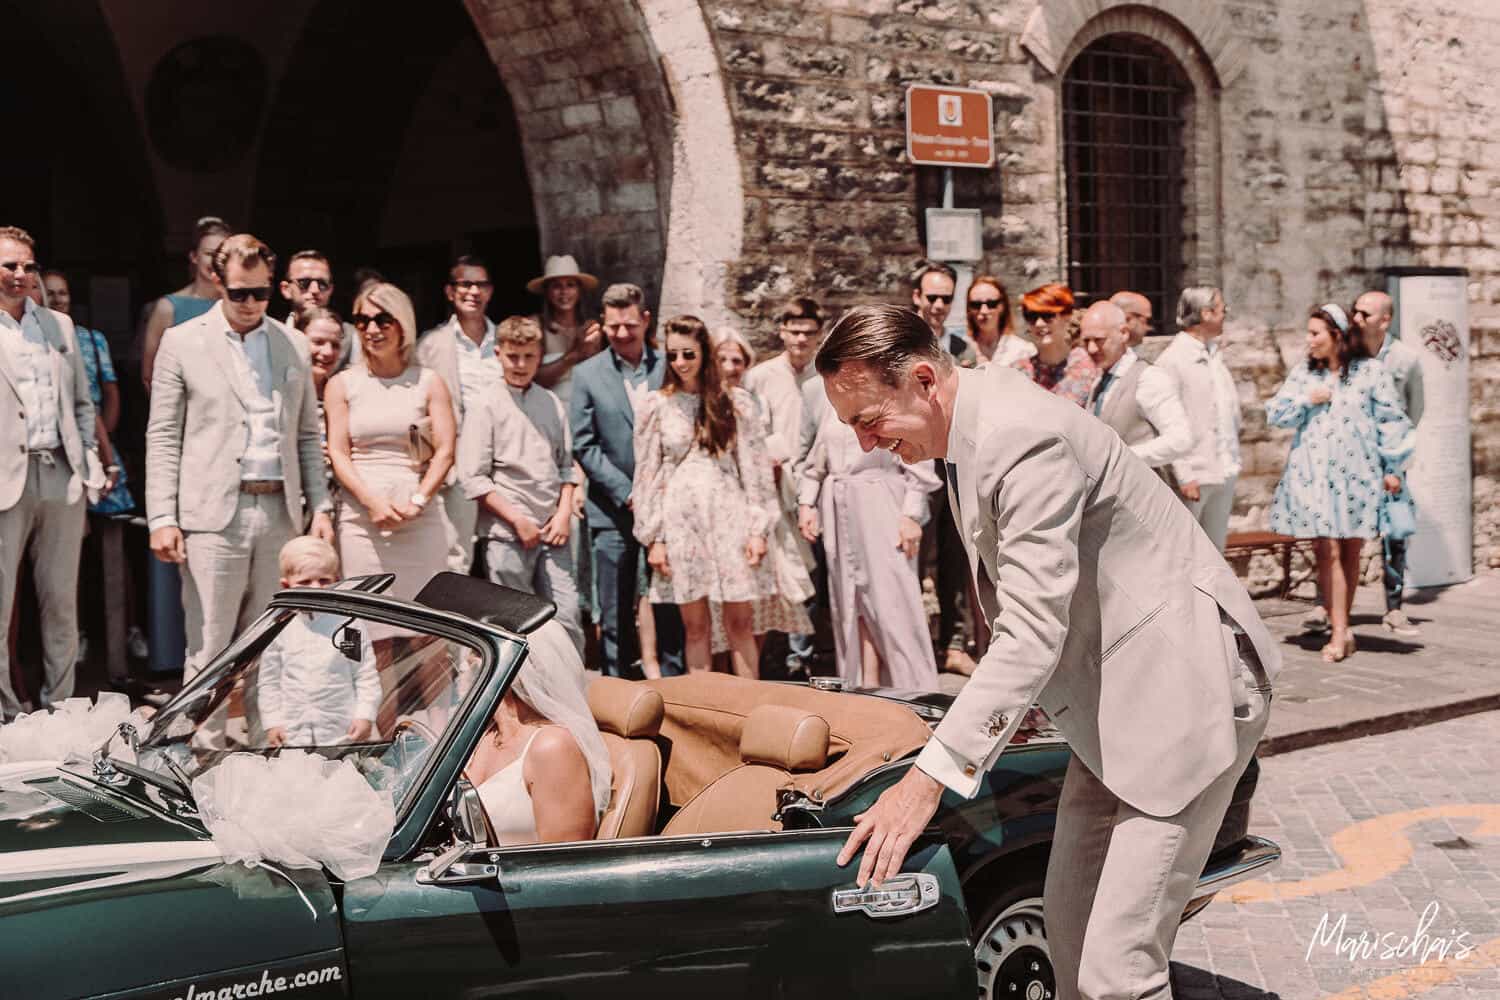 trouwfotograaf voor een bruiloft in marche italië